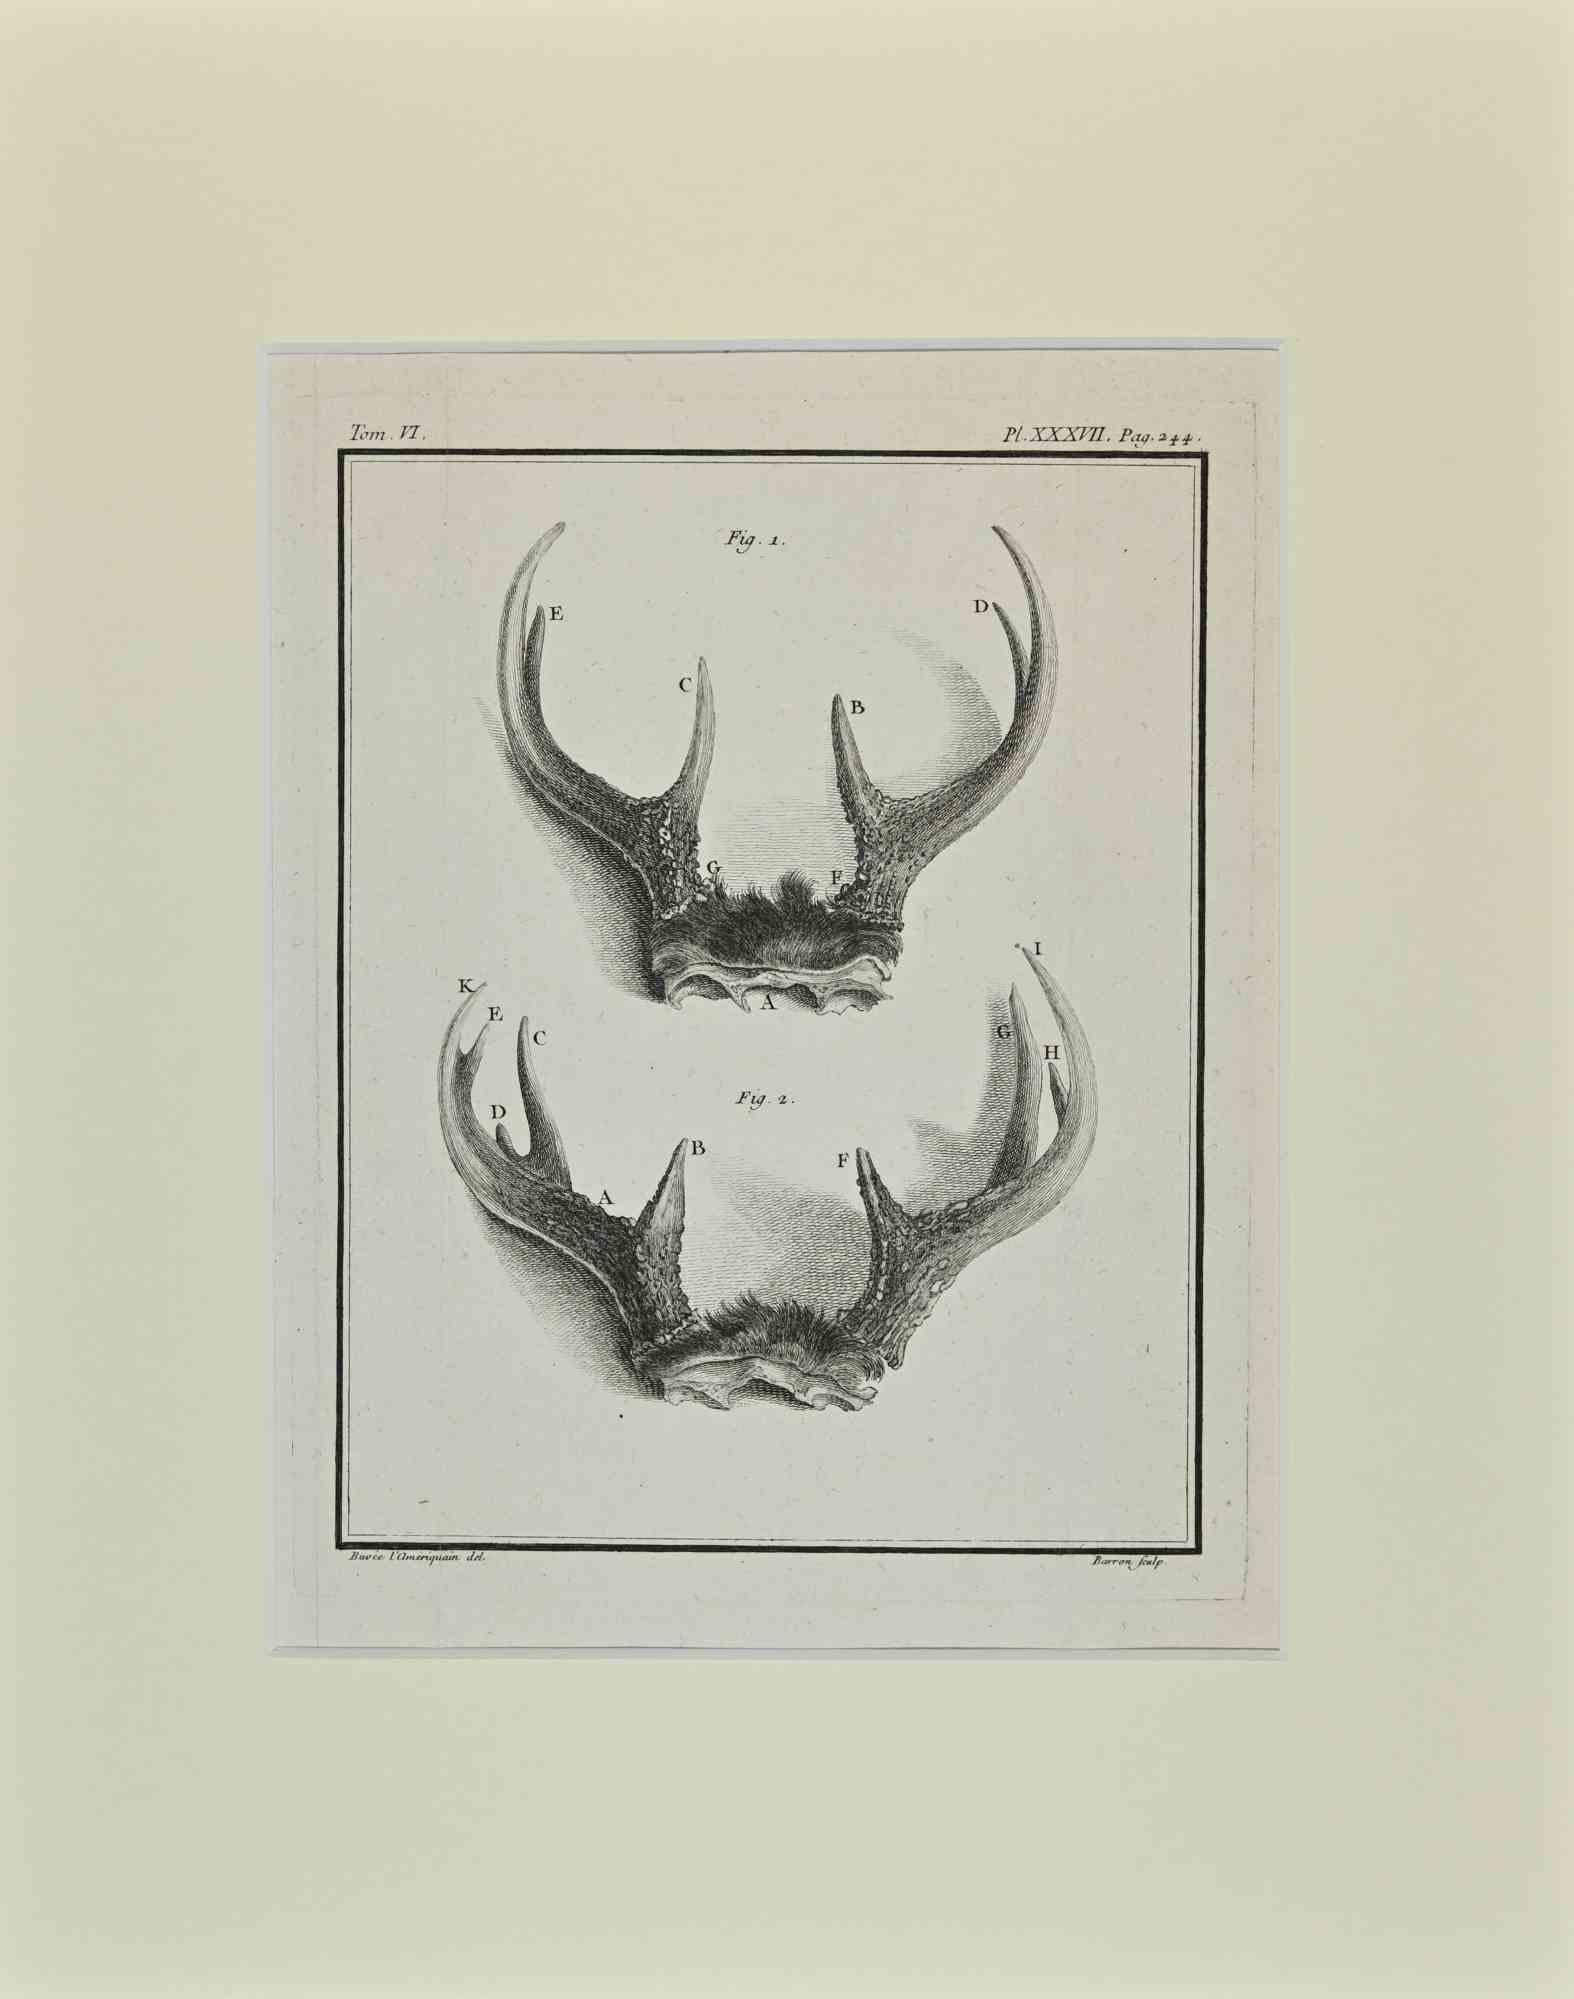 Les cornes de cerf est une œuvre d'art réalisée par Buvée l'Américain en 1771.  

Gravure à l'eau-forte B./W. sur papier ivoire. Signé sur la plaque dans la marge inférieure gauche.

L'œuvre est collée sur du carton. Dimensions totales : 35x28